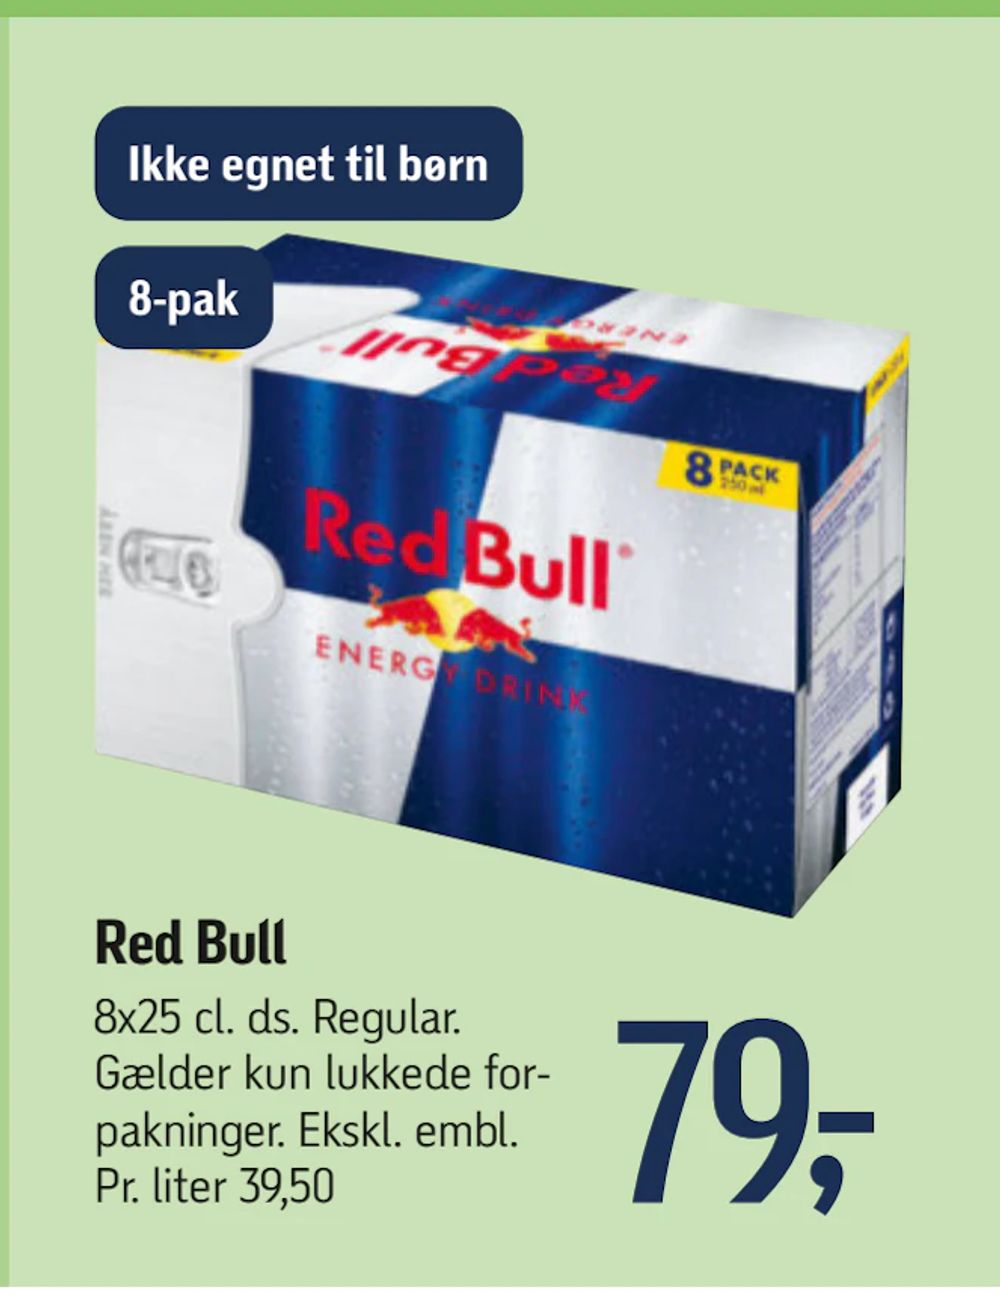 Tilbud på Red Bull fra føtex til 79 kr.